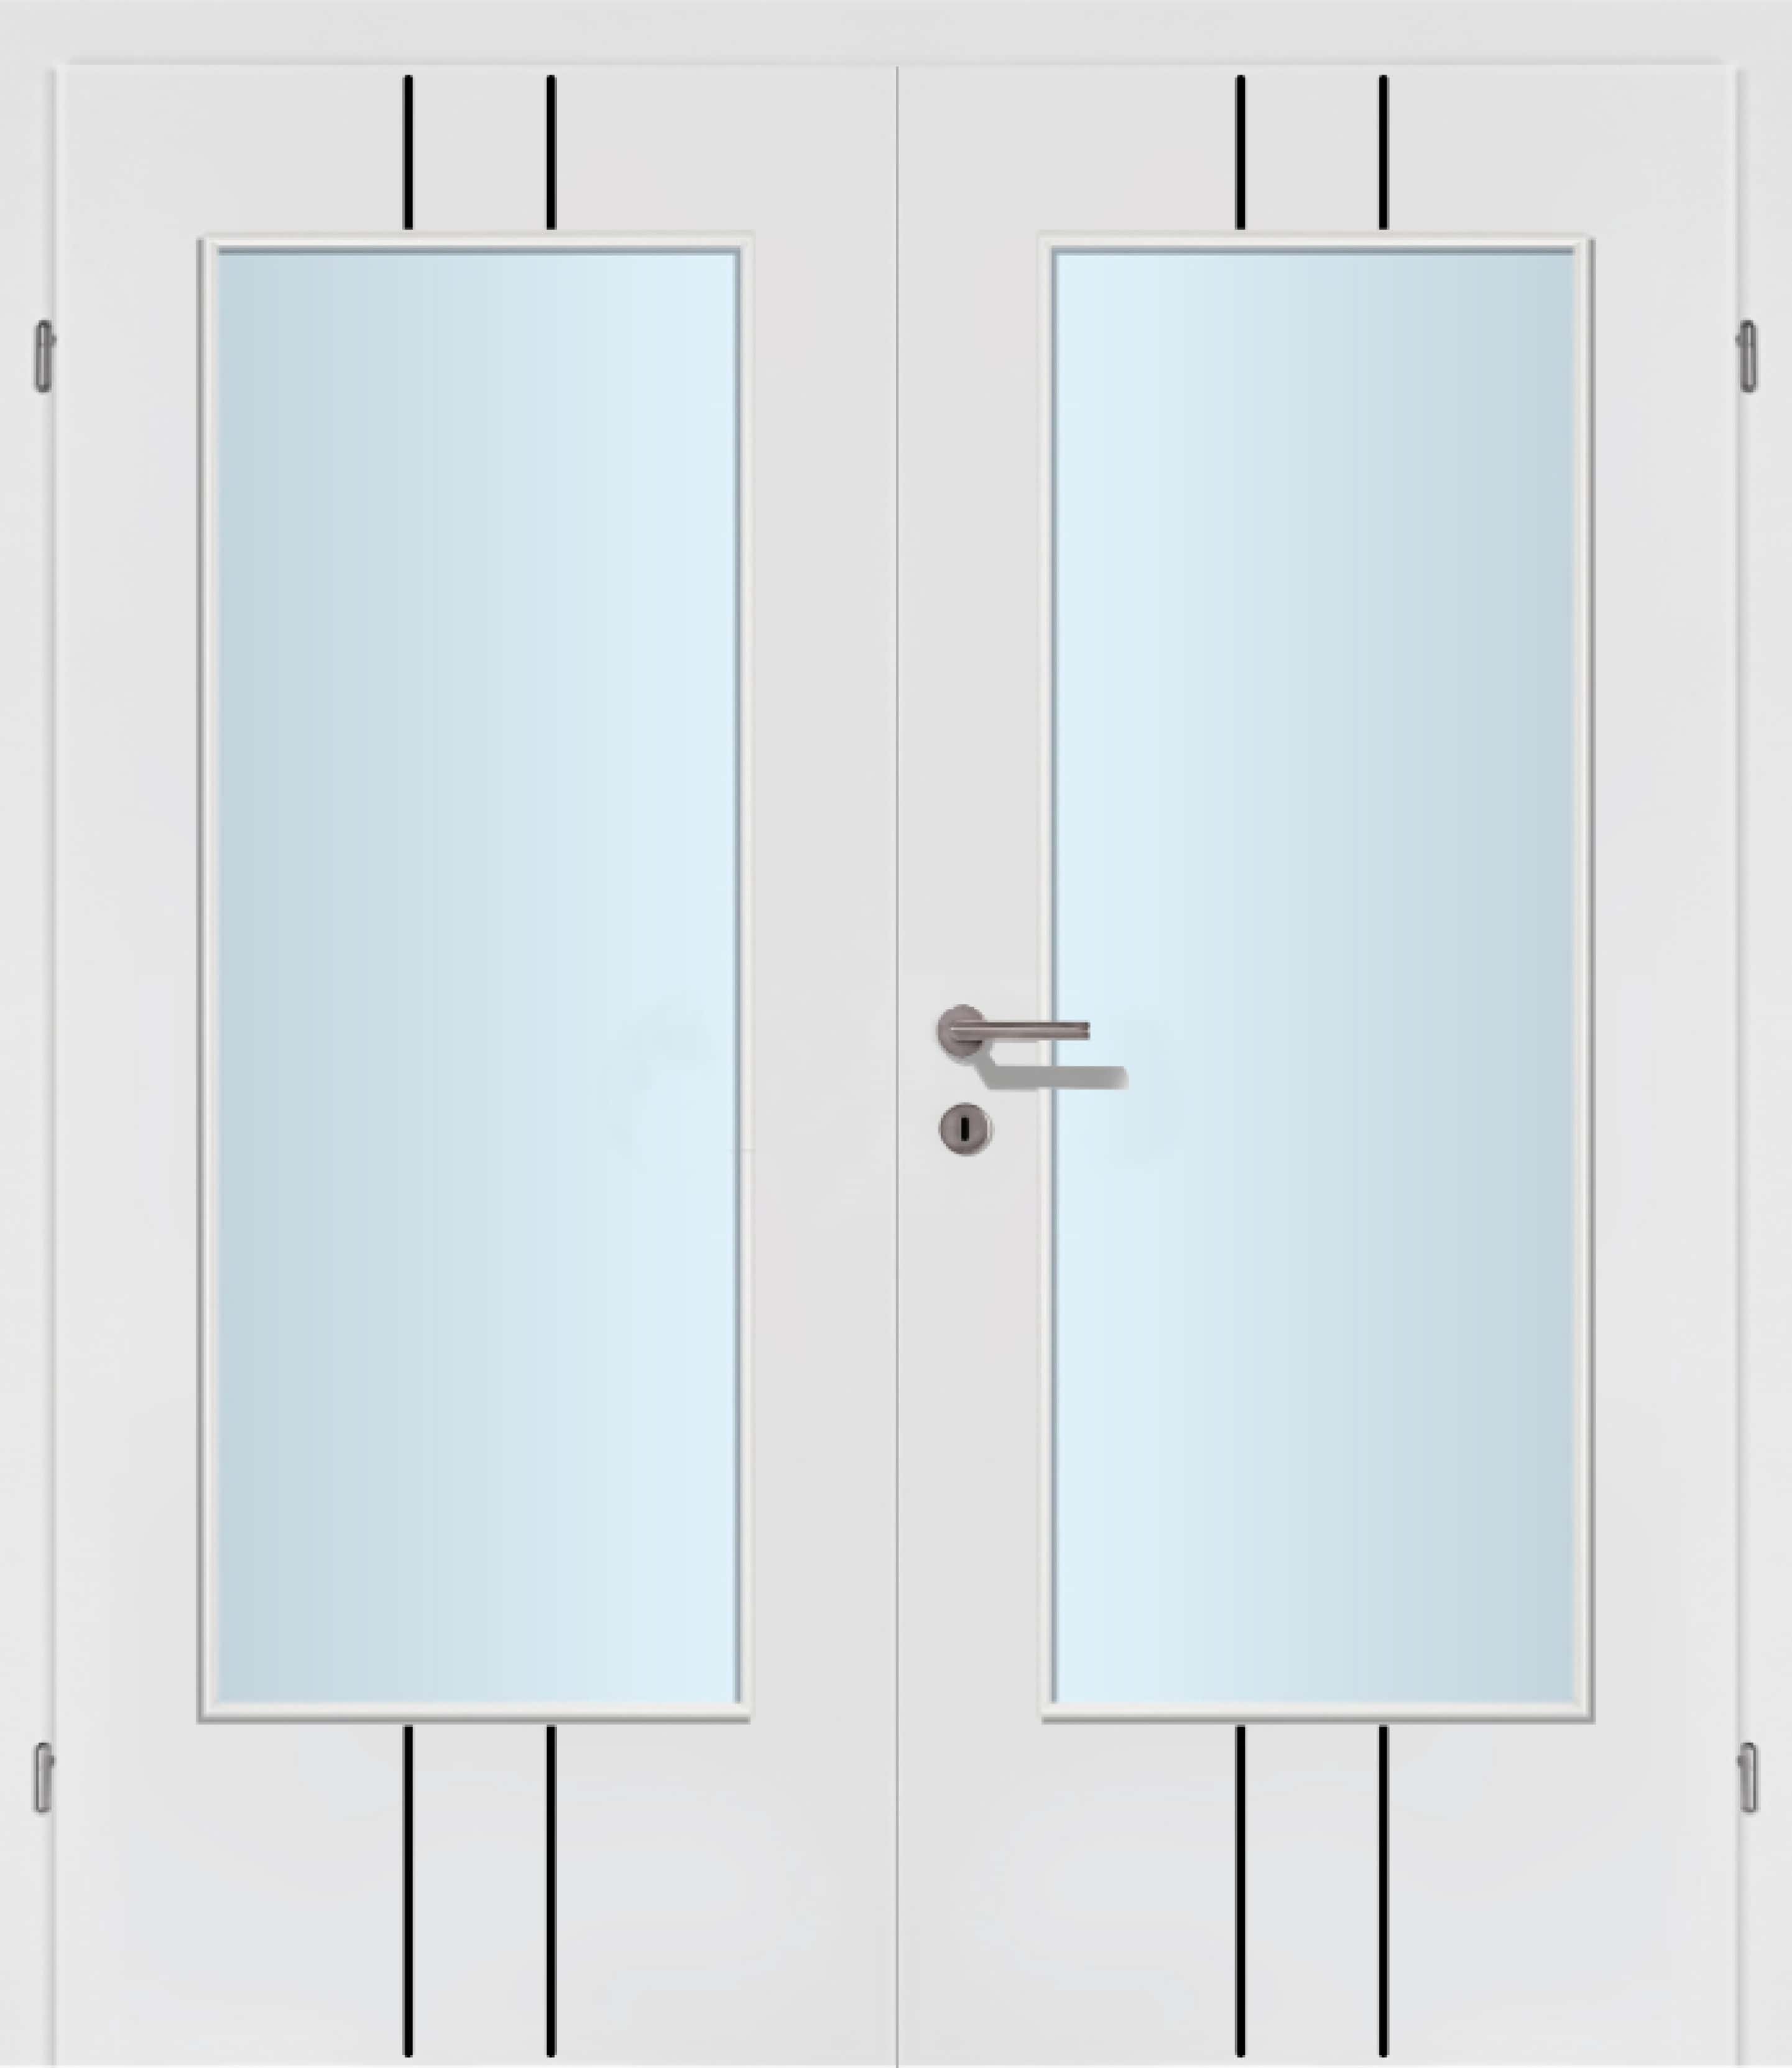 Selektion T24 Black Lisenen weiss Innentür Inkl. Zarge (Türrahmen) Doppeltüre Inkl. Glaslichte C